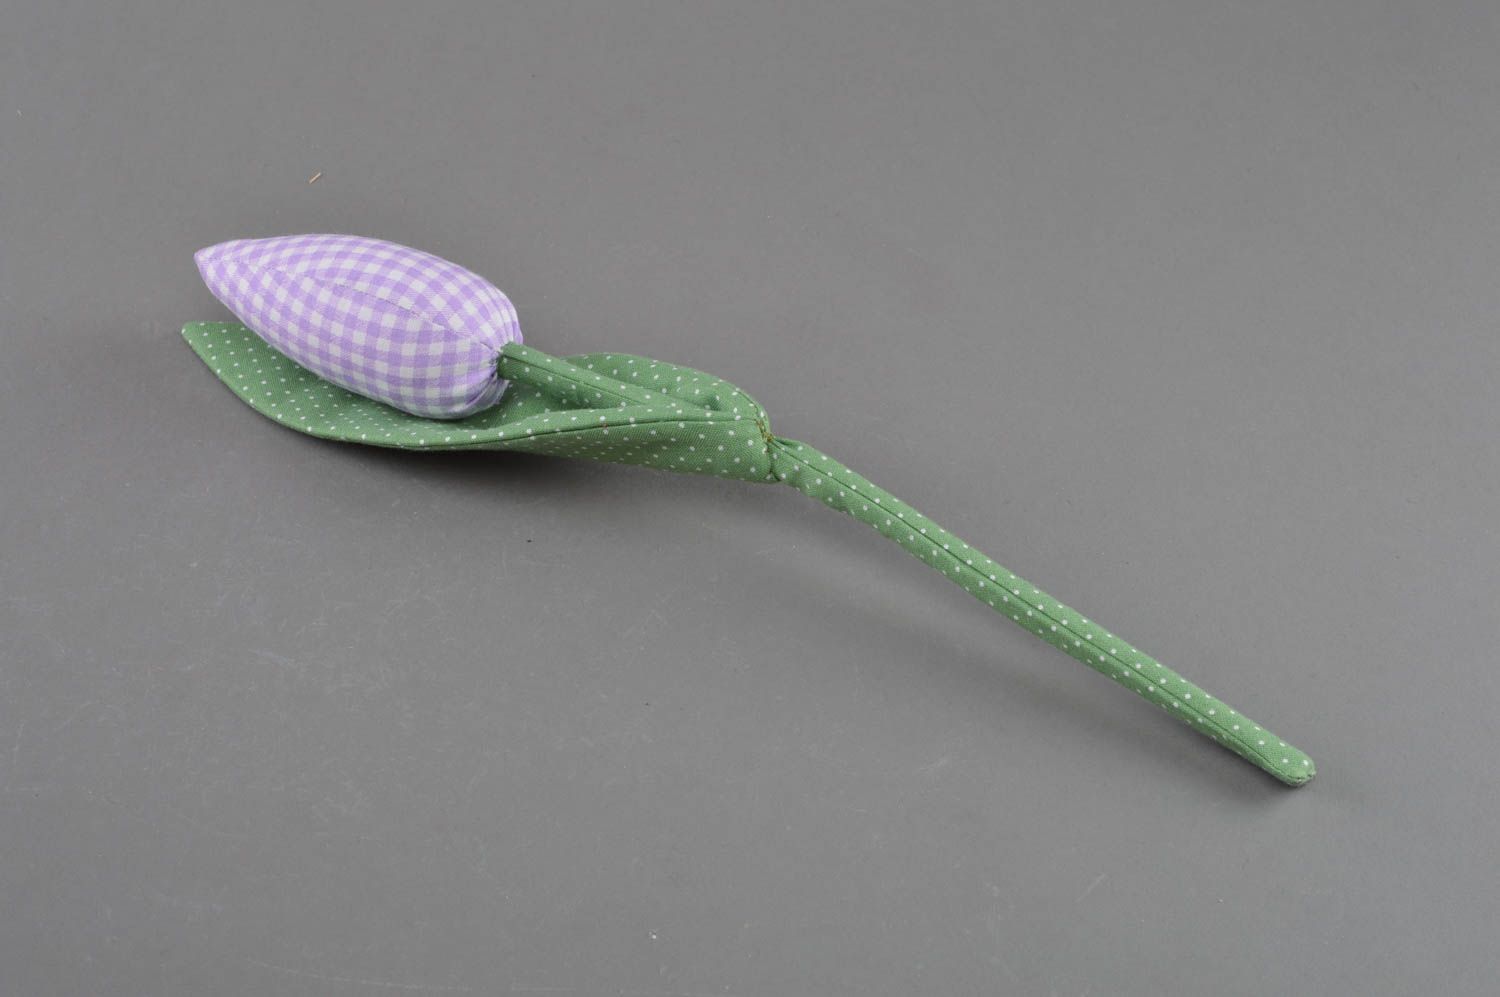 Тканевый тюльпан из хлопка мягкий для декора ручной работы сиреневый в клеточку фото 1